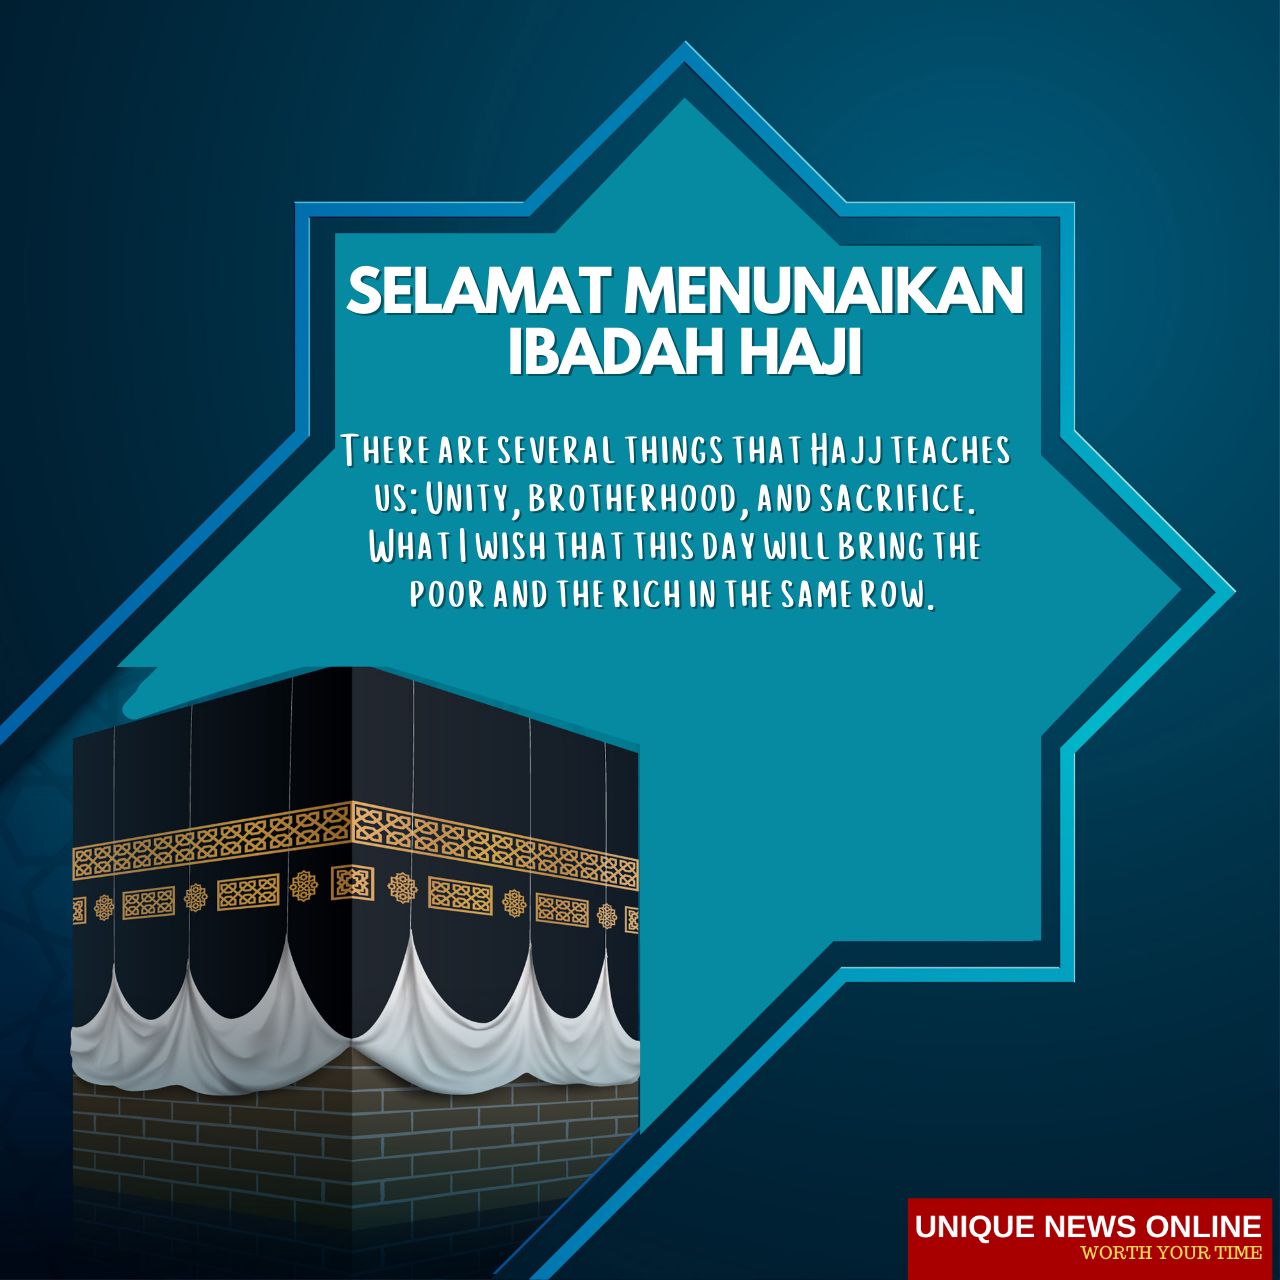 Selamat Menunaikan Ibadah Haji 2021 التمنيات الماليزية ، الصور ، الحالة ، الاقتباسات ، التحيات ، الدعاء أحيي أحبائك